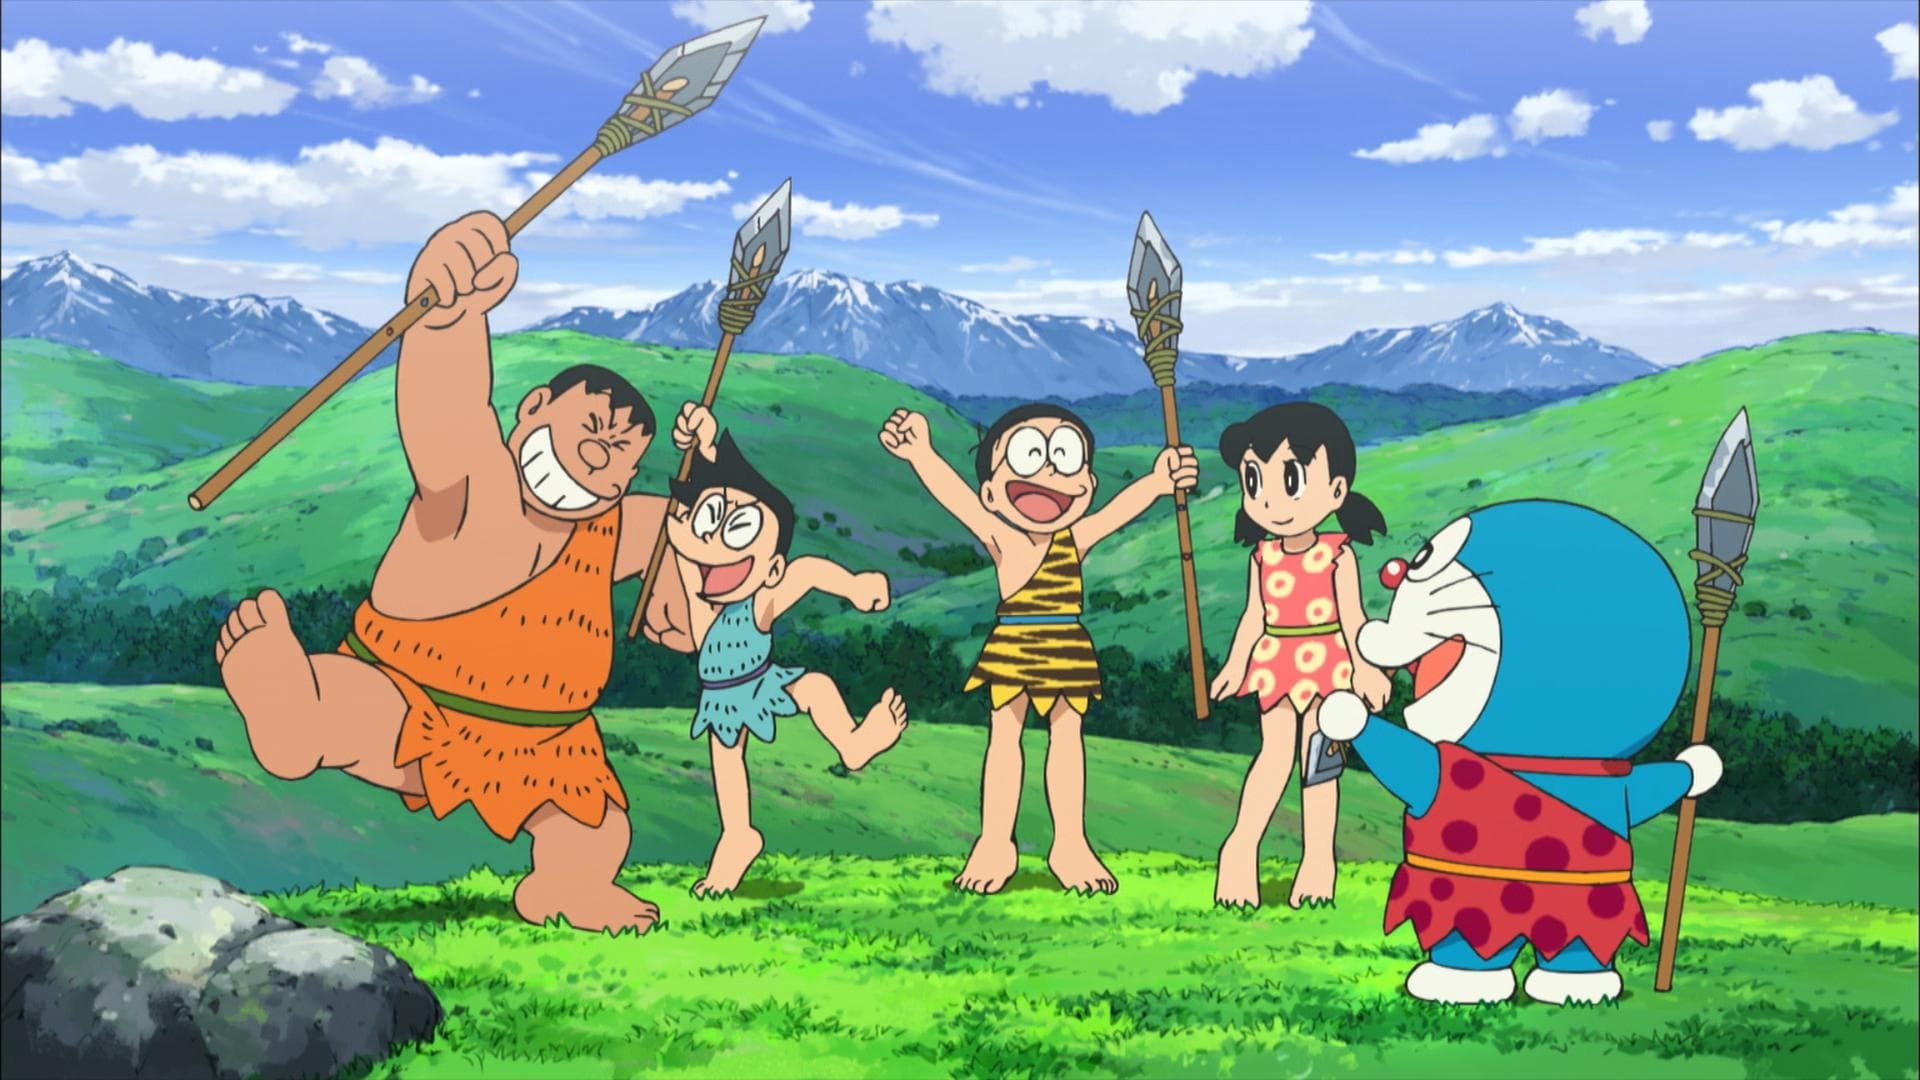 Doraemon: Il film - Nobita e la nascita del Giappone